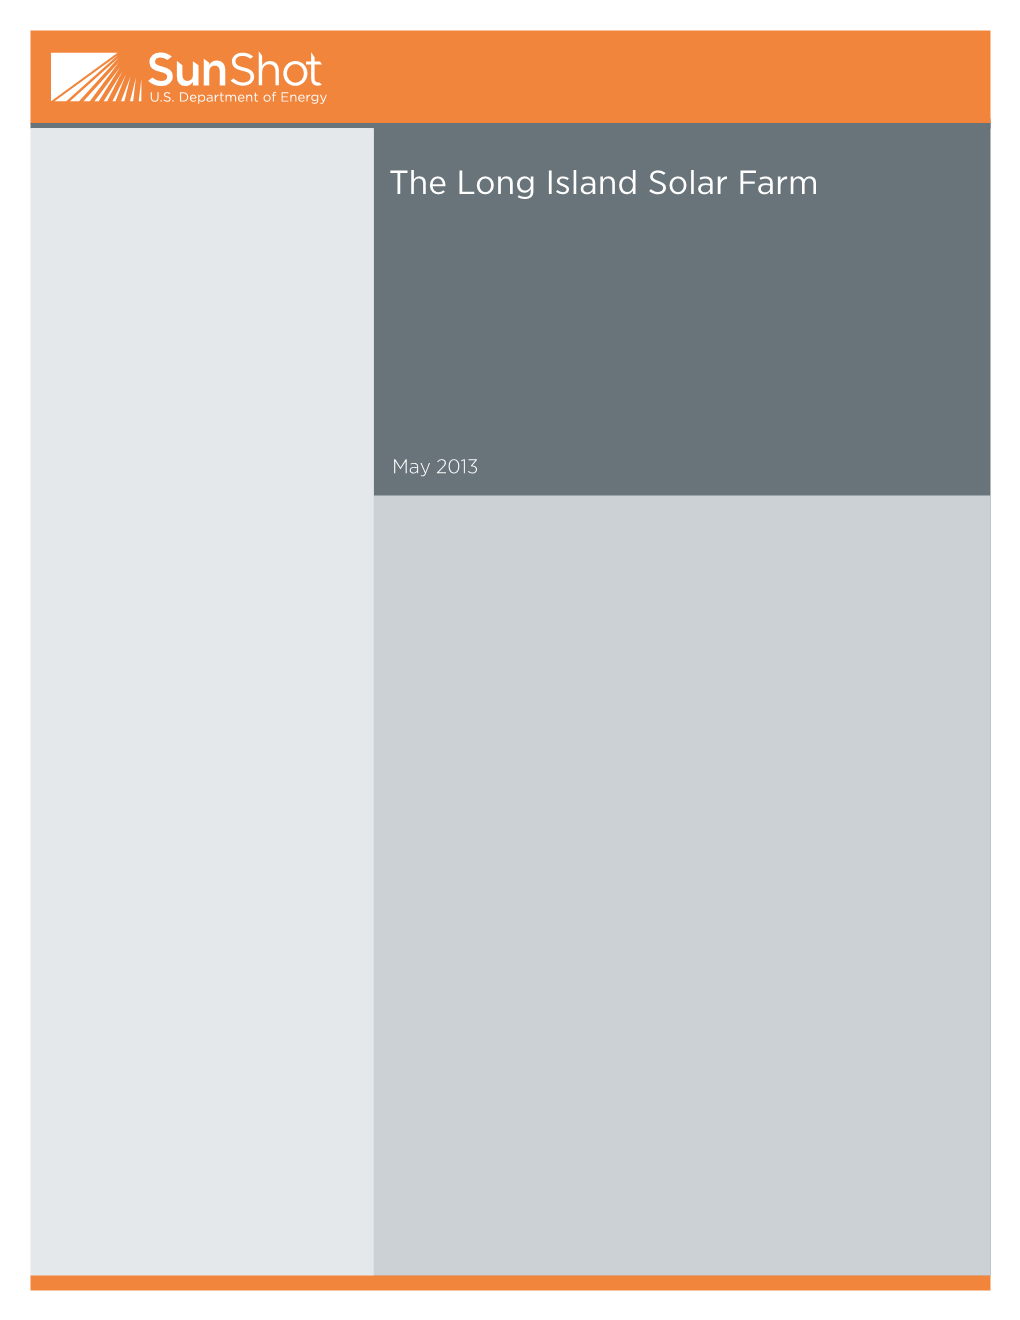 The Long Island Solar Farm